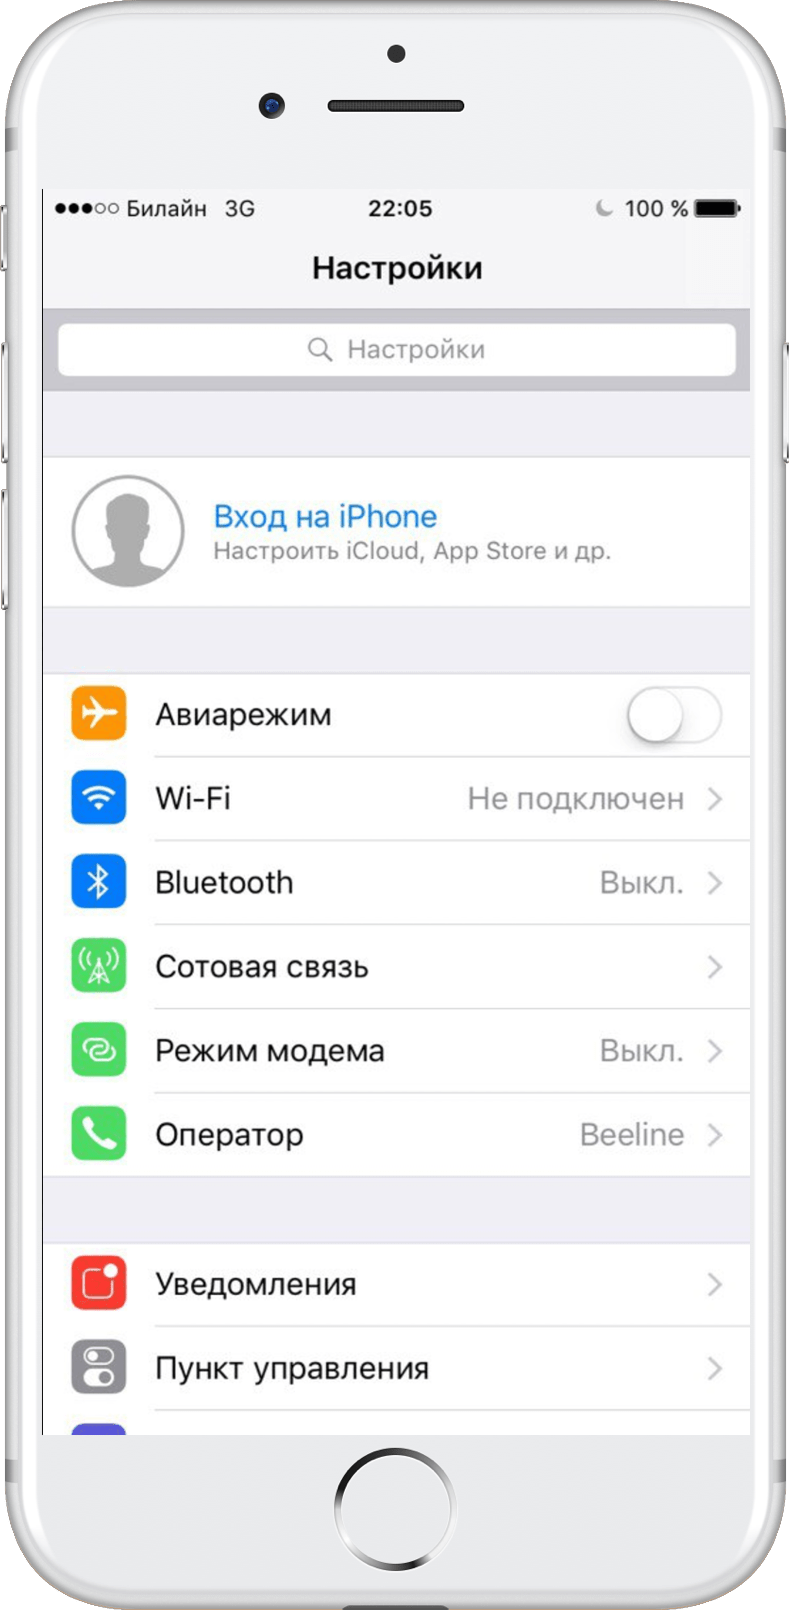 Как создать новый аккаунт apple id на iphone или ipad без кредитной карты бесплатно и без кредитной карты | it-here.ru